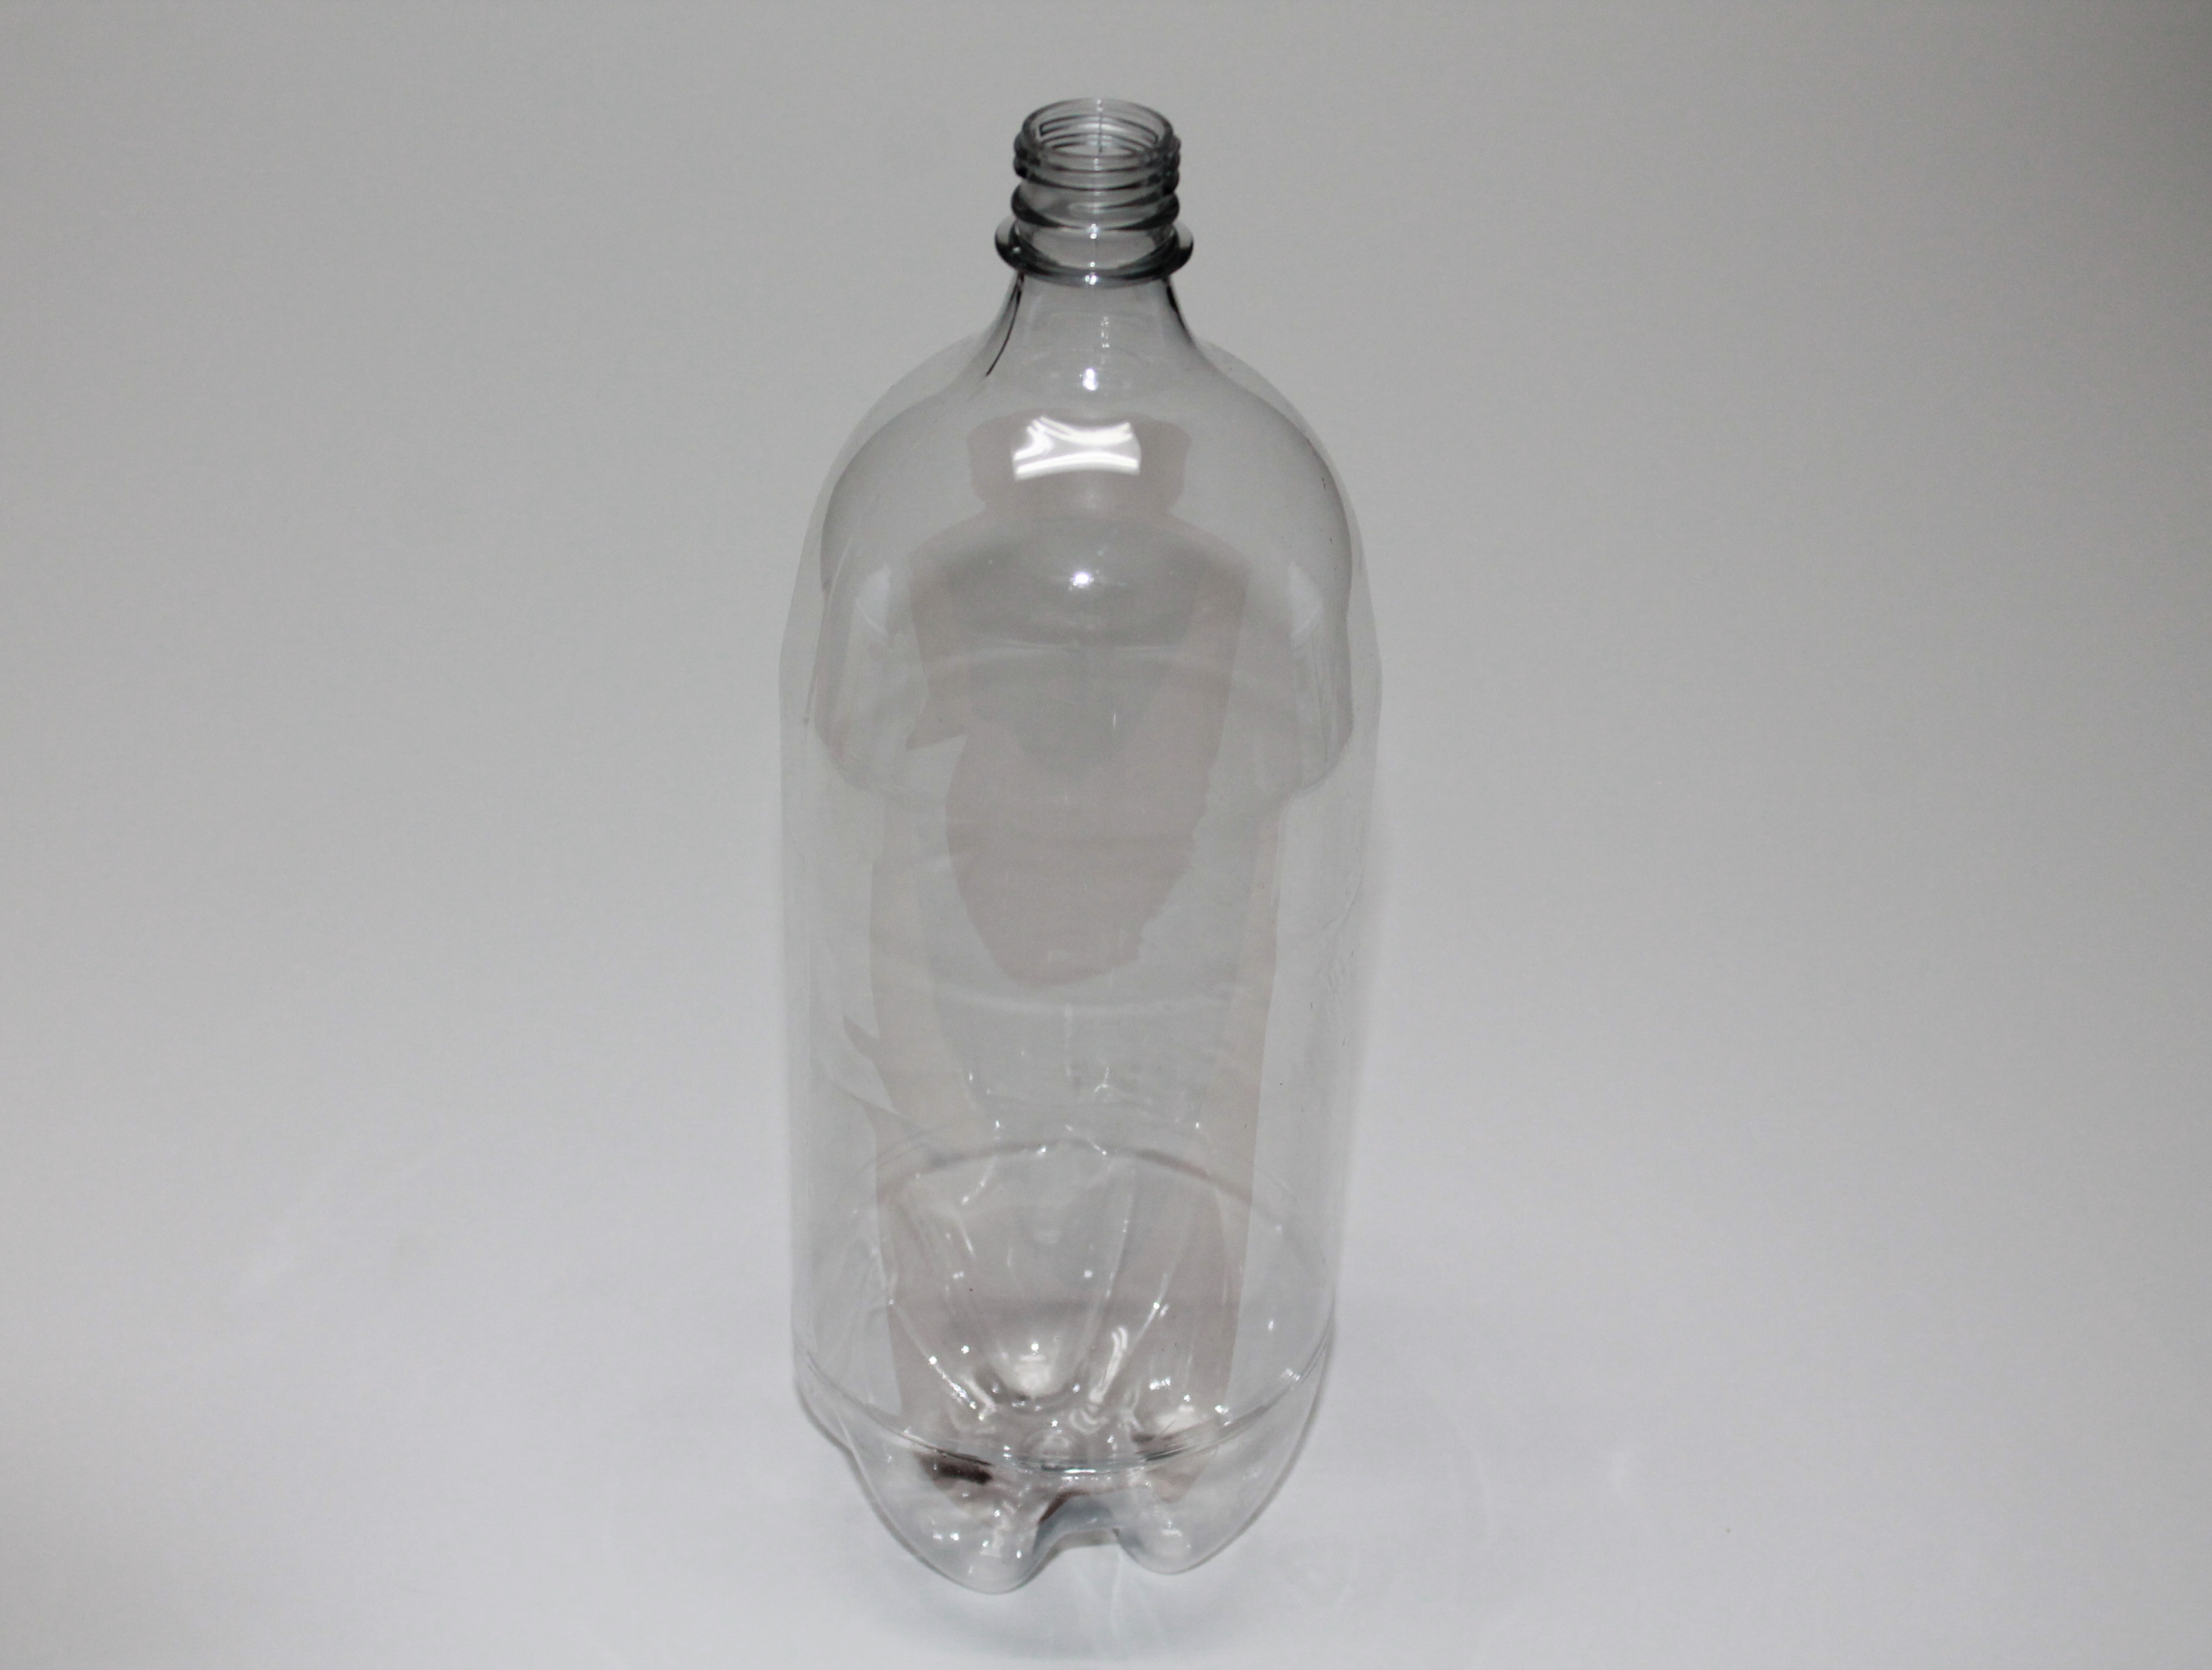 2 Liter Bottle Insertion Telegraph 5677